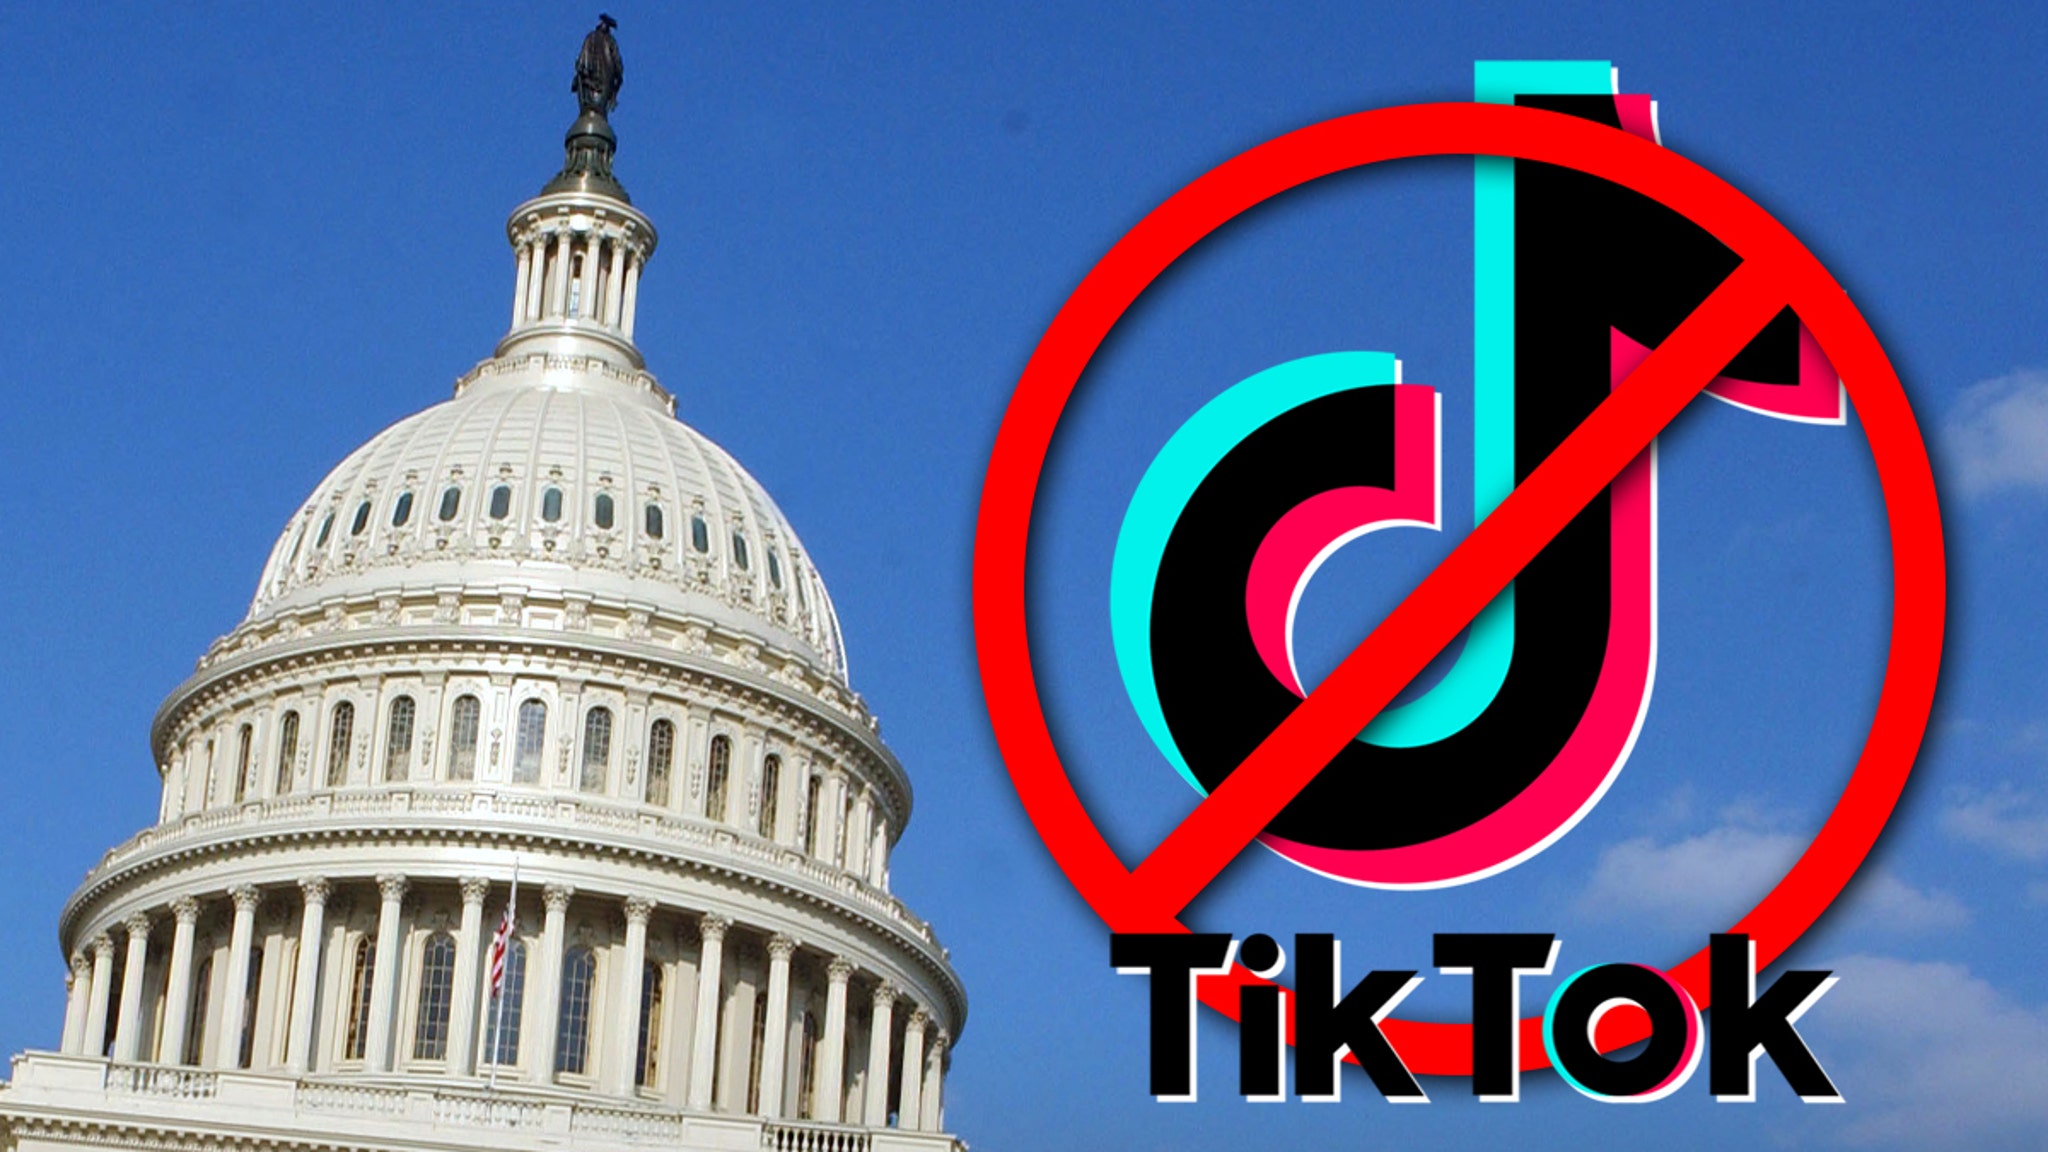 عرض TikTok إشعارًا لبعض المستخدمين الأمريكيين يوم الجمعة، يحثهم فيه على الاتصال بأعضاء مجلس الشيوخ ومطالبتهم بالتصويت بـ "لا" على مشروع قانون يحظر تطبيق الفيديو القصير الشهير إذا لم يتم سحبه من شركة التكنولوجيا الصينية ByteDance.